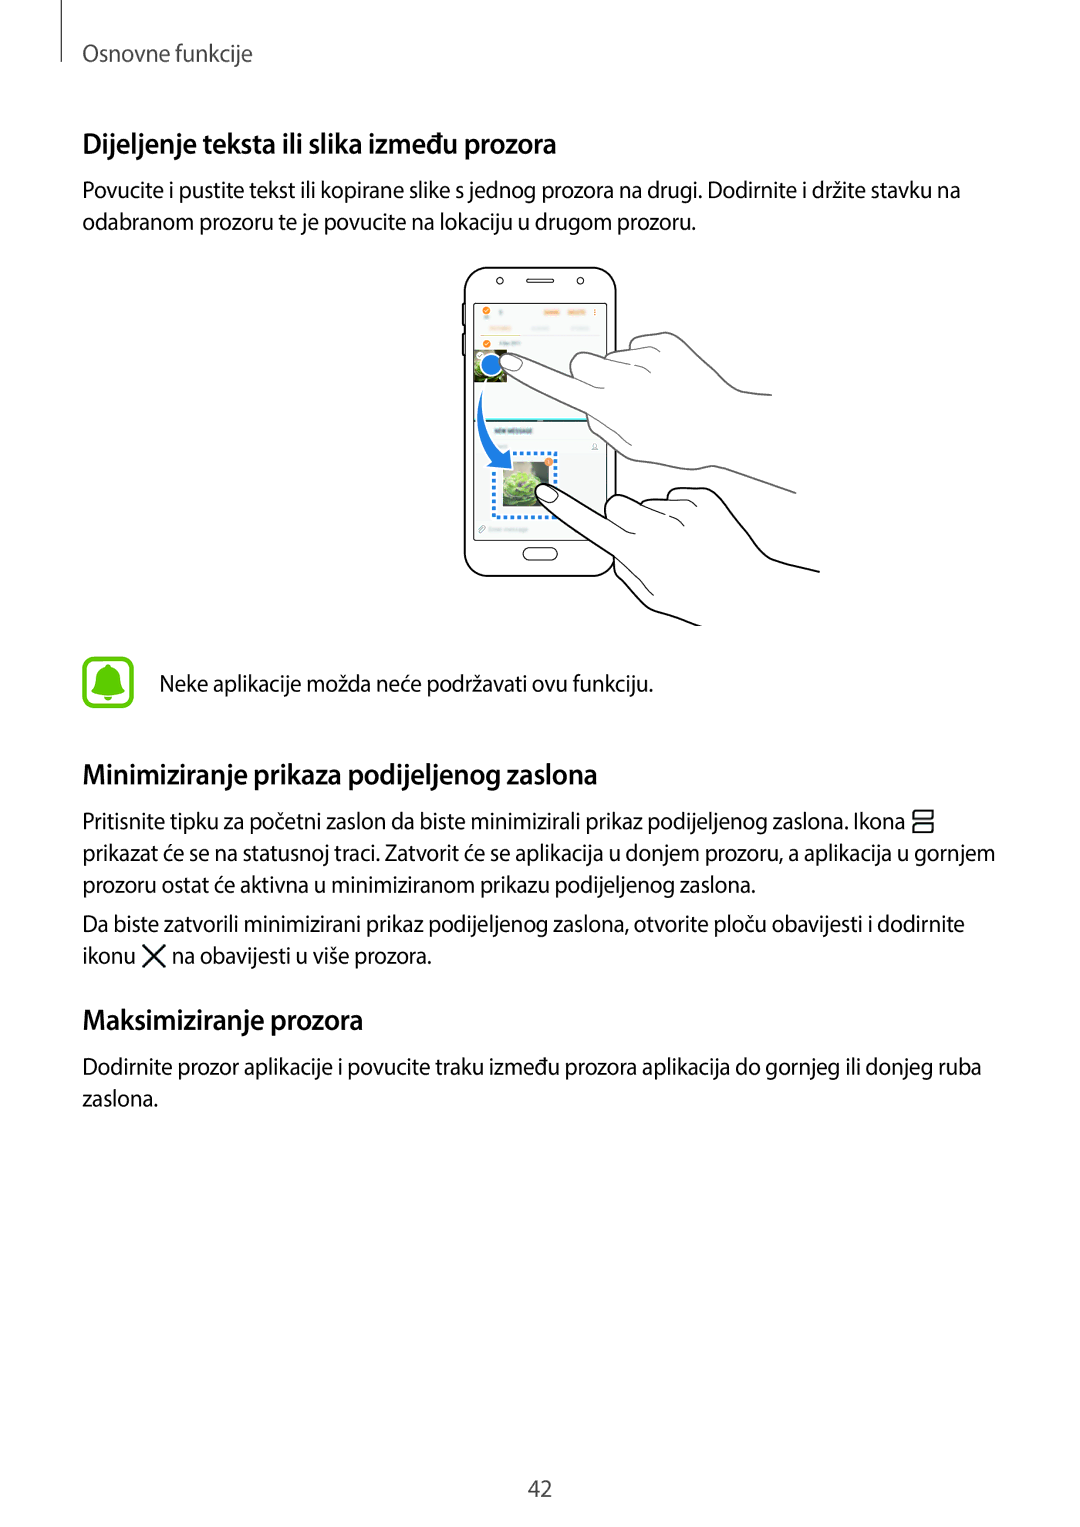 Samsung SM-J330FZSNDHR manual Dijeljenje teksta ili slika između prozora, Minimiziranje prikaza podijeljenog zaslona 